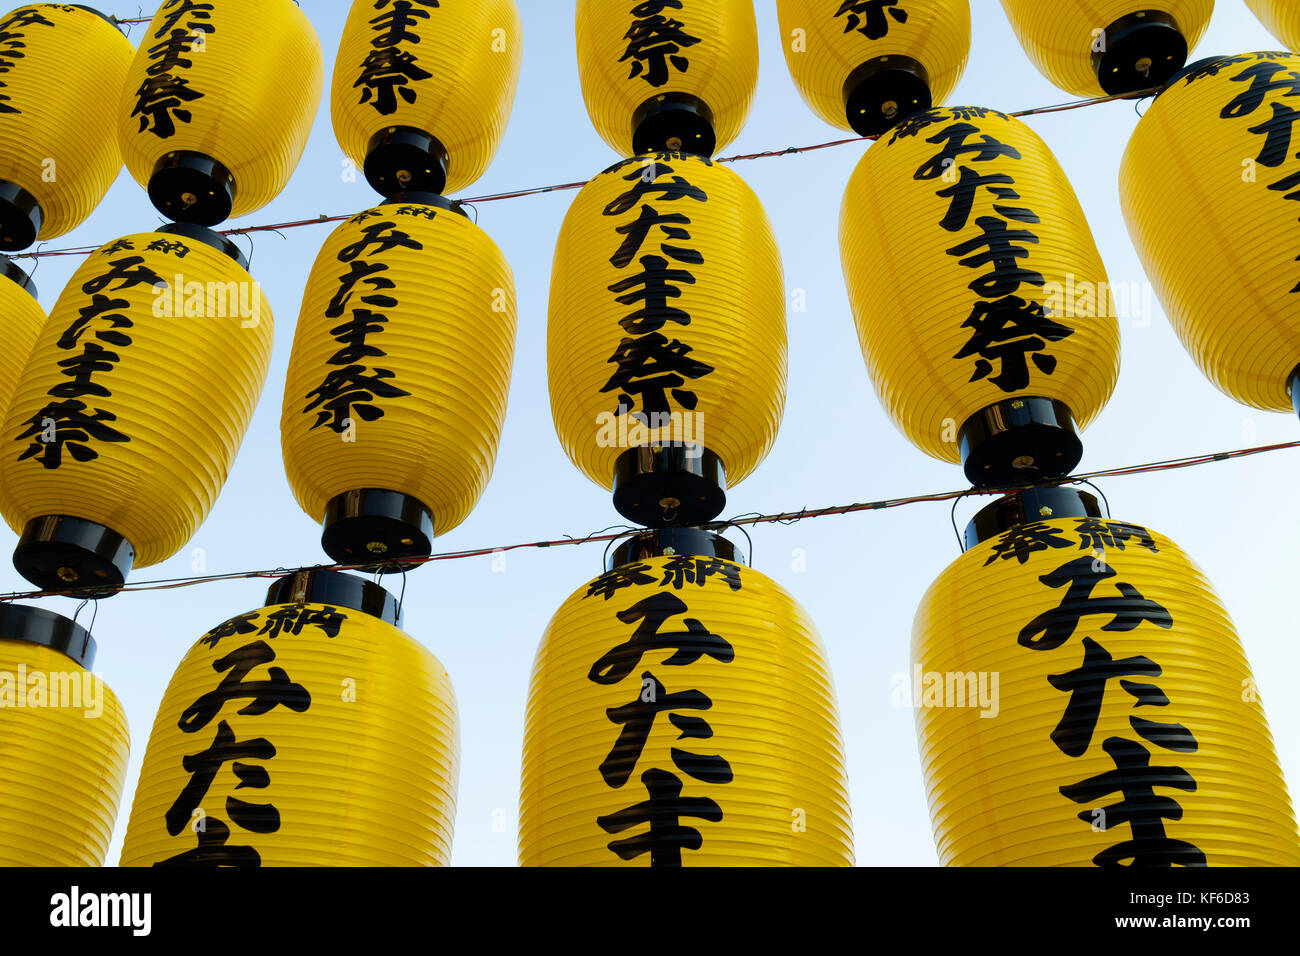 Hiroshima, Japan -  May 27, 2017: Row of traditional yellow paper lanterns hanging at the entrance at the Hiroshima Gokoku-jinja Shrine Stock Photo